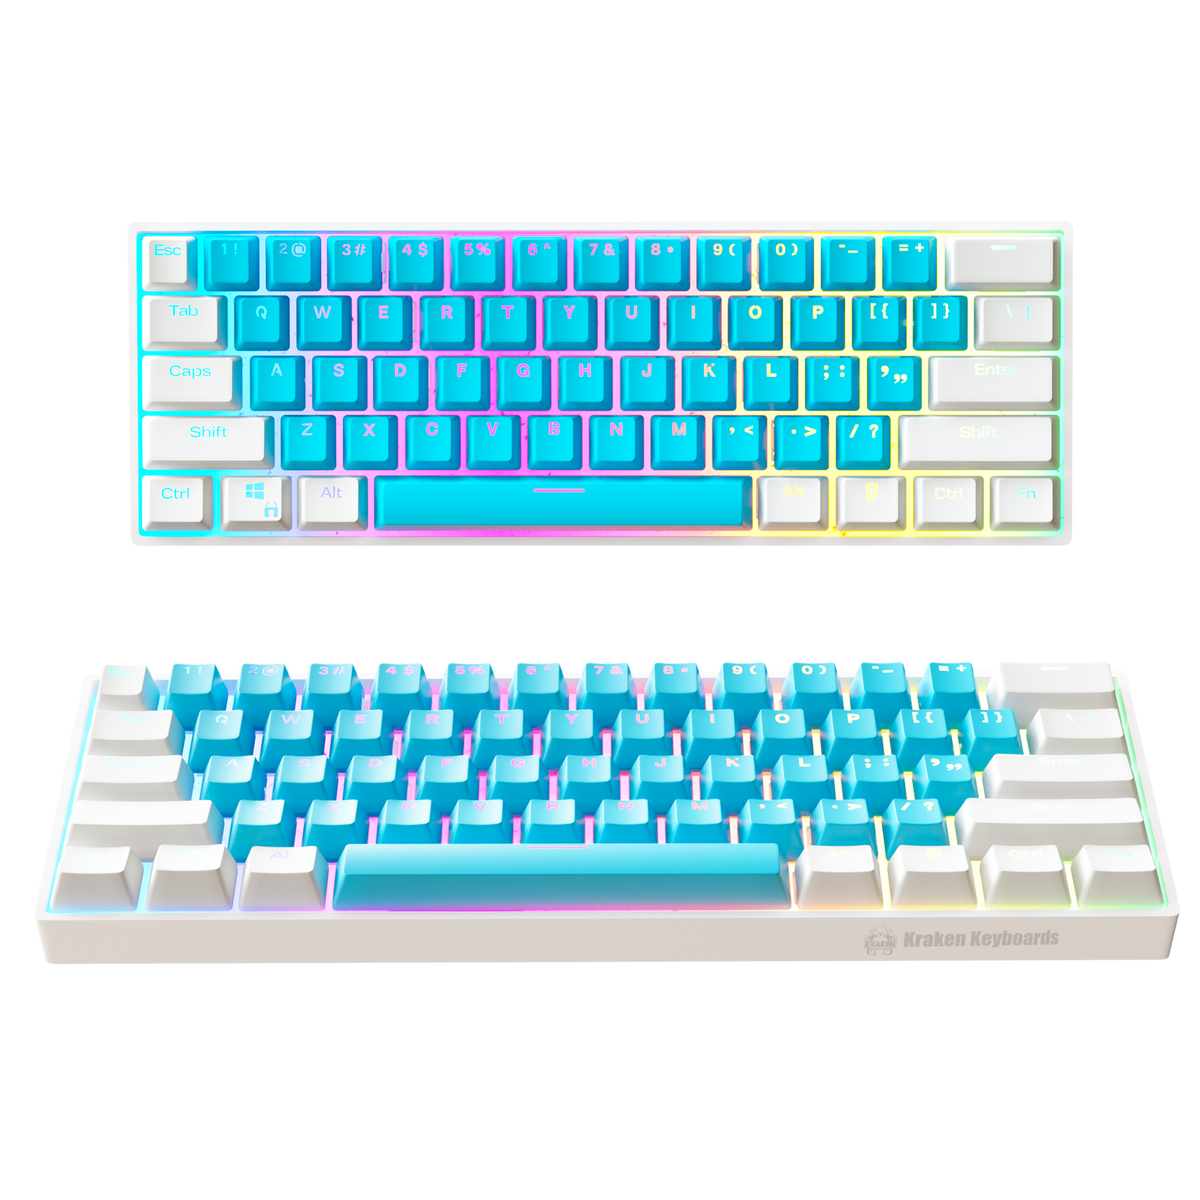 Kraken Pro 60 bred Edition 60% Mechanical Keyboard RGB Gaming Keyboard